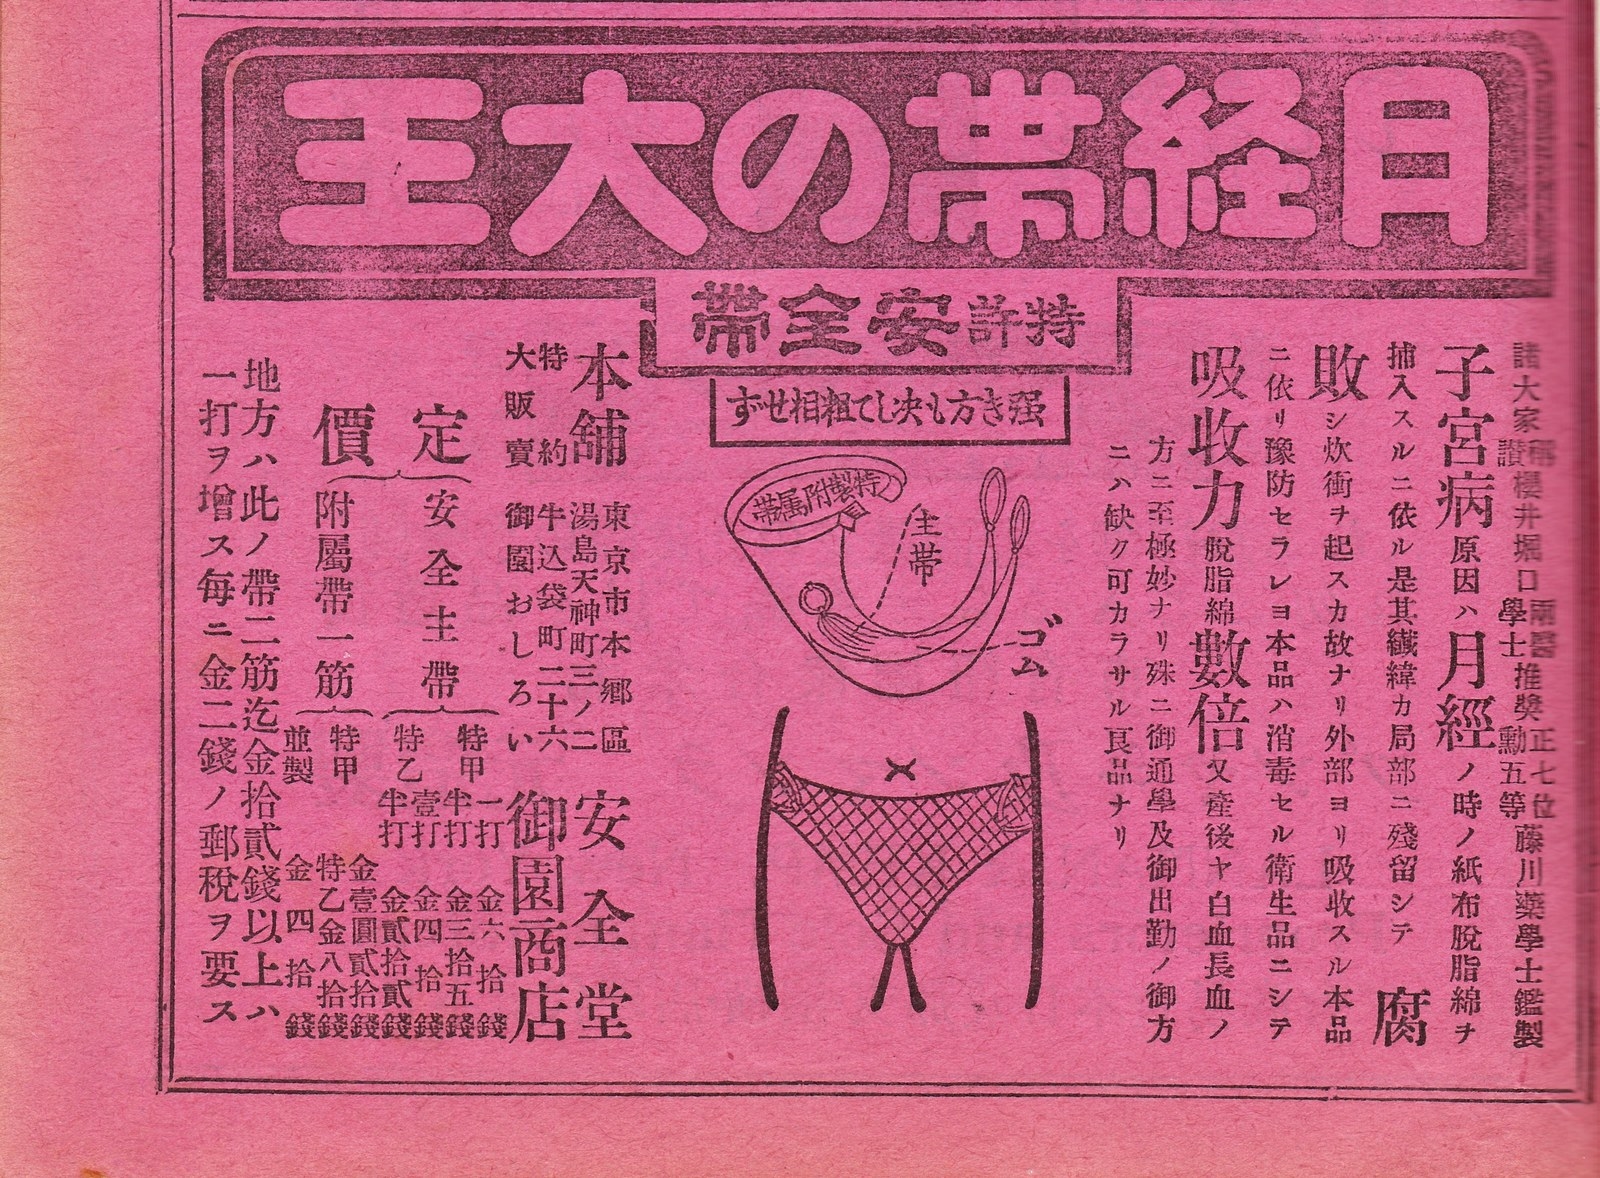 戦争中 女性は生理をどう過ごしていたのか 明治 昭和の広告でわかること